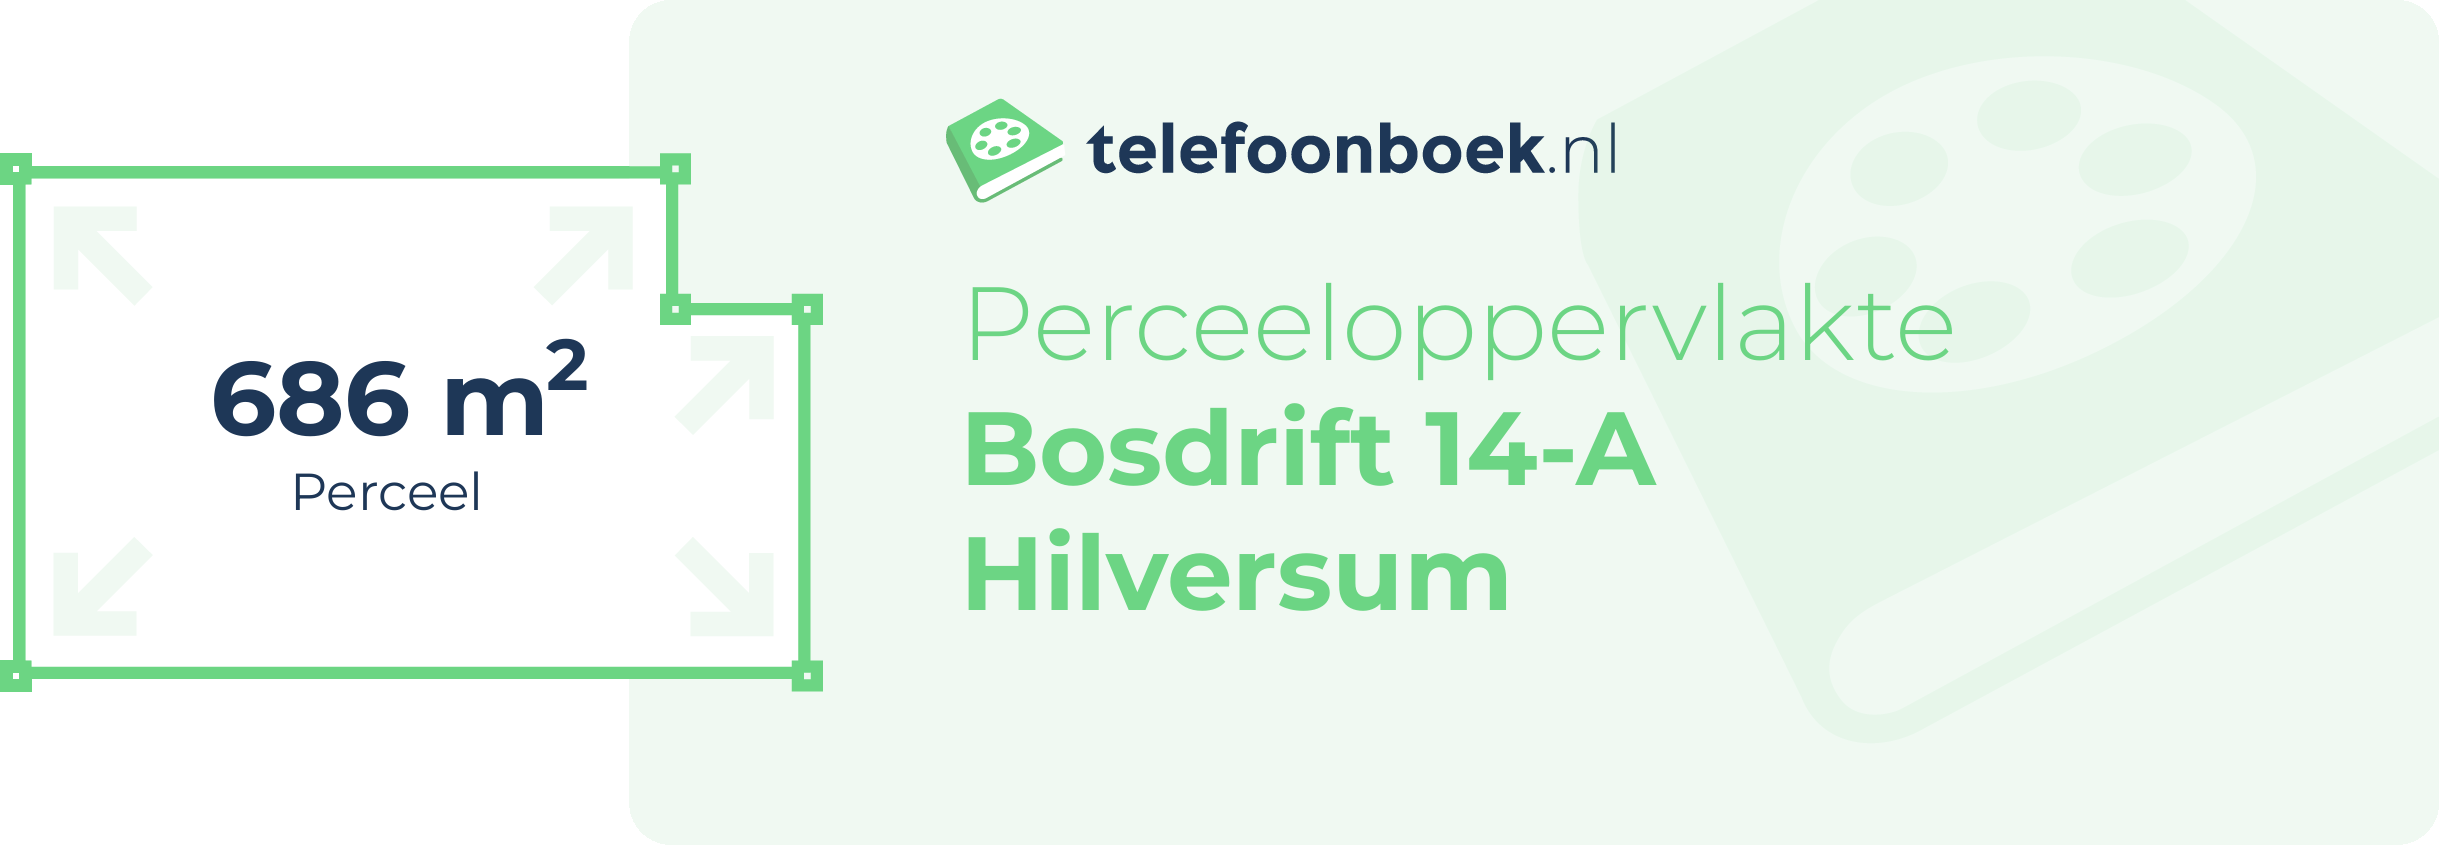 Perceeloppervlakte Bosdrift 14-A Hilversum